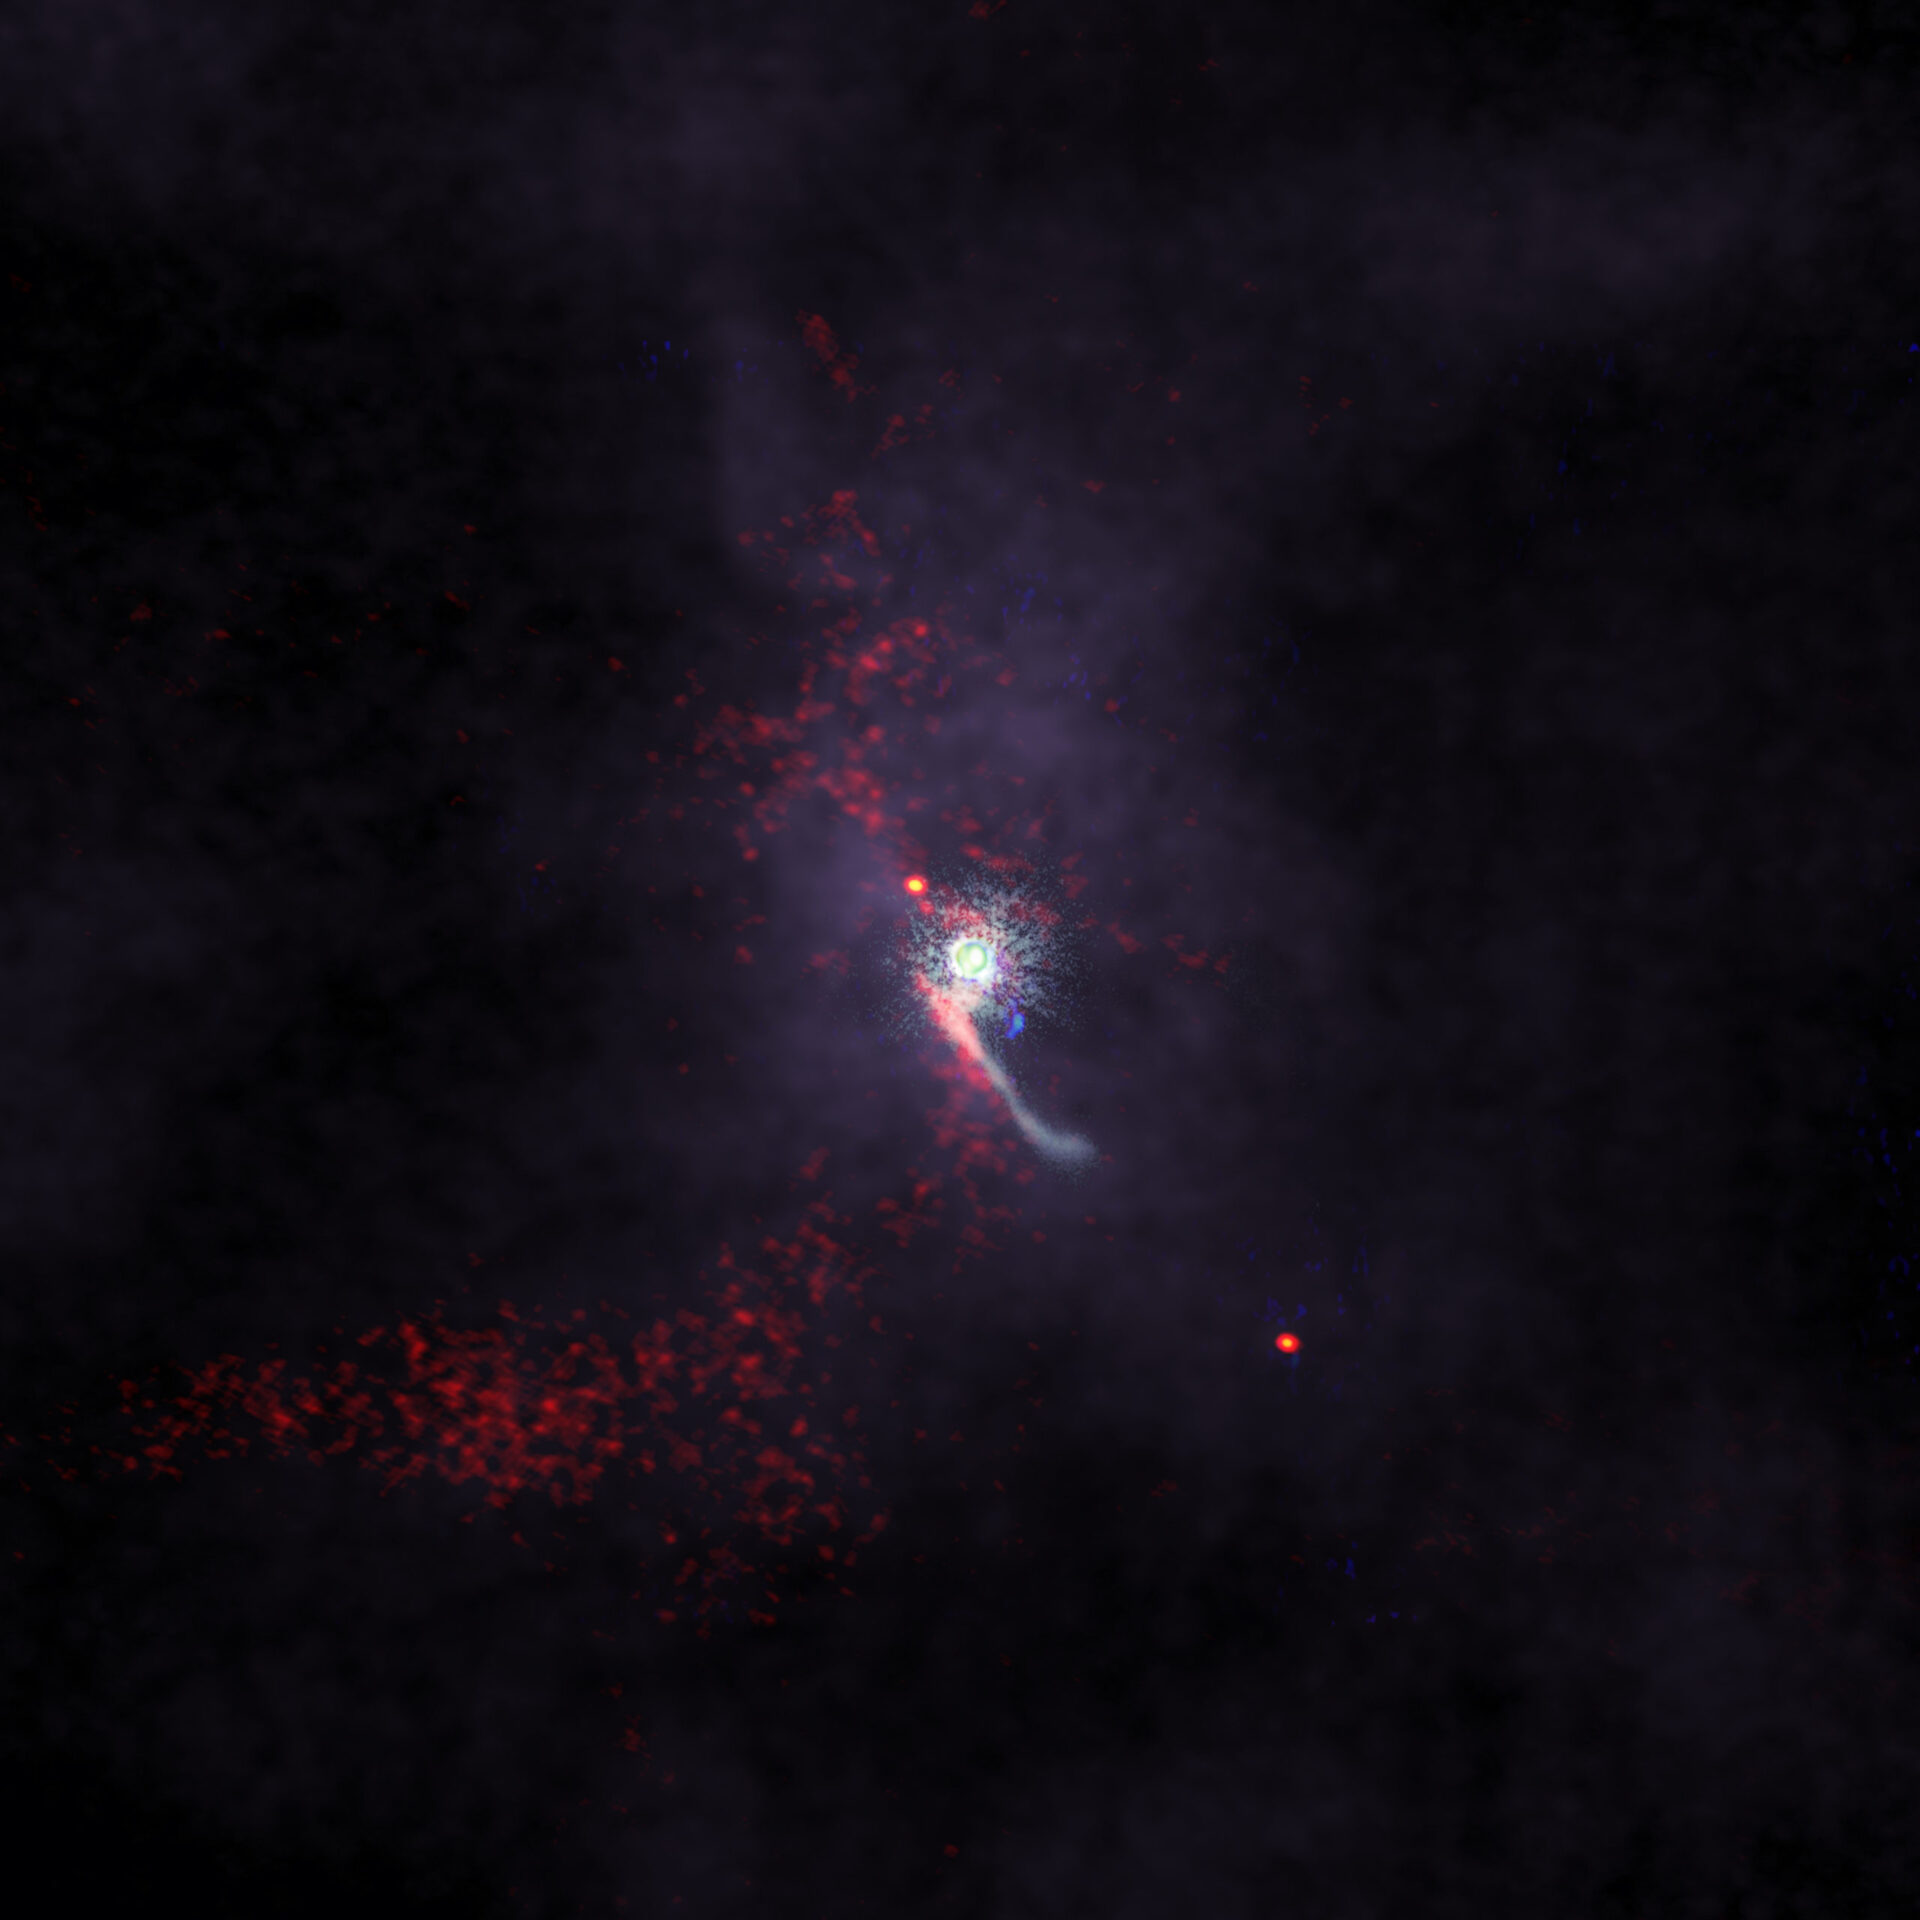 ALMA observa “intruso” en flagrante acercamiento estelar raramente detectado hasta ahora